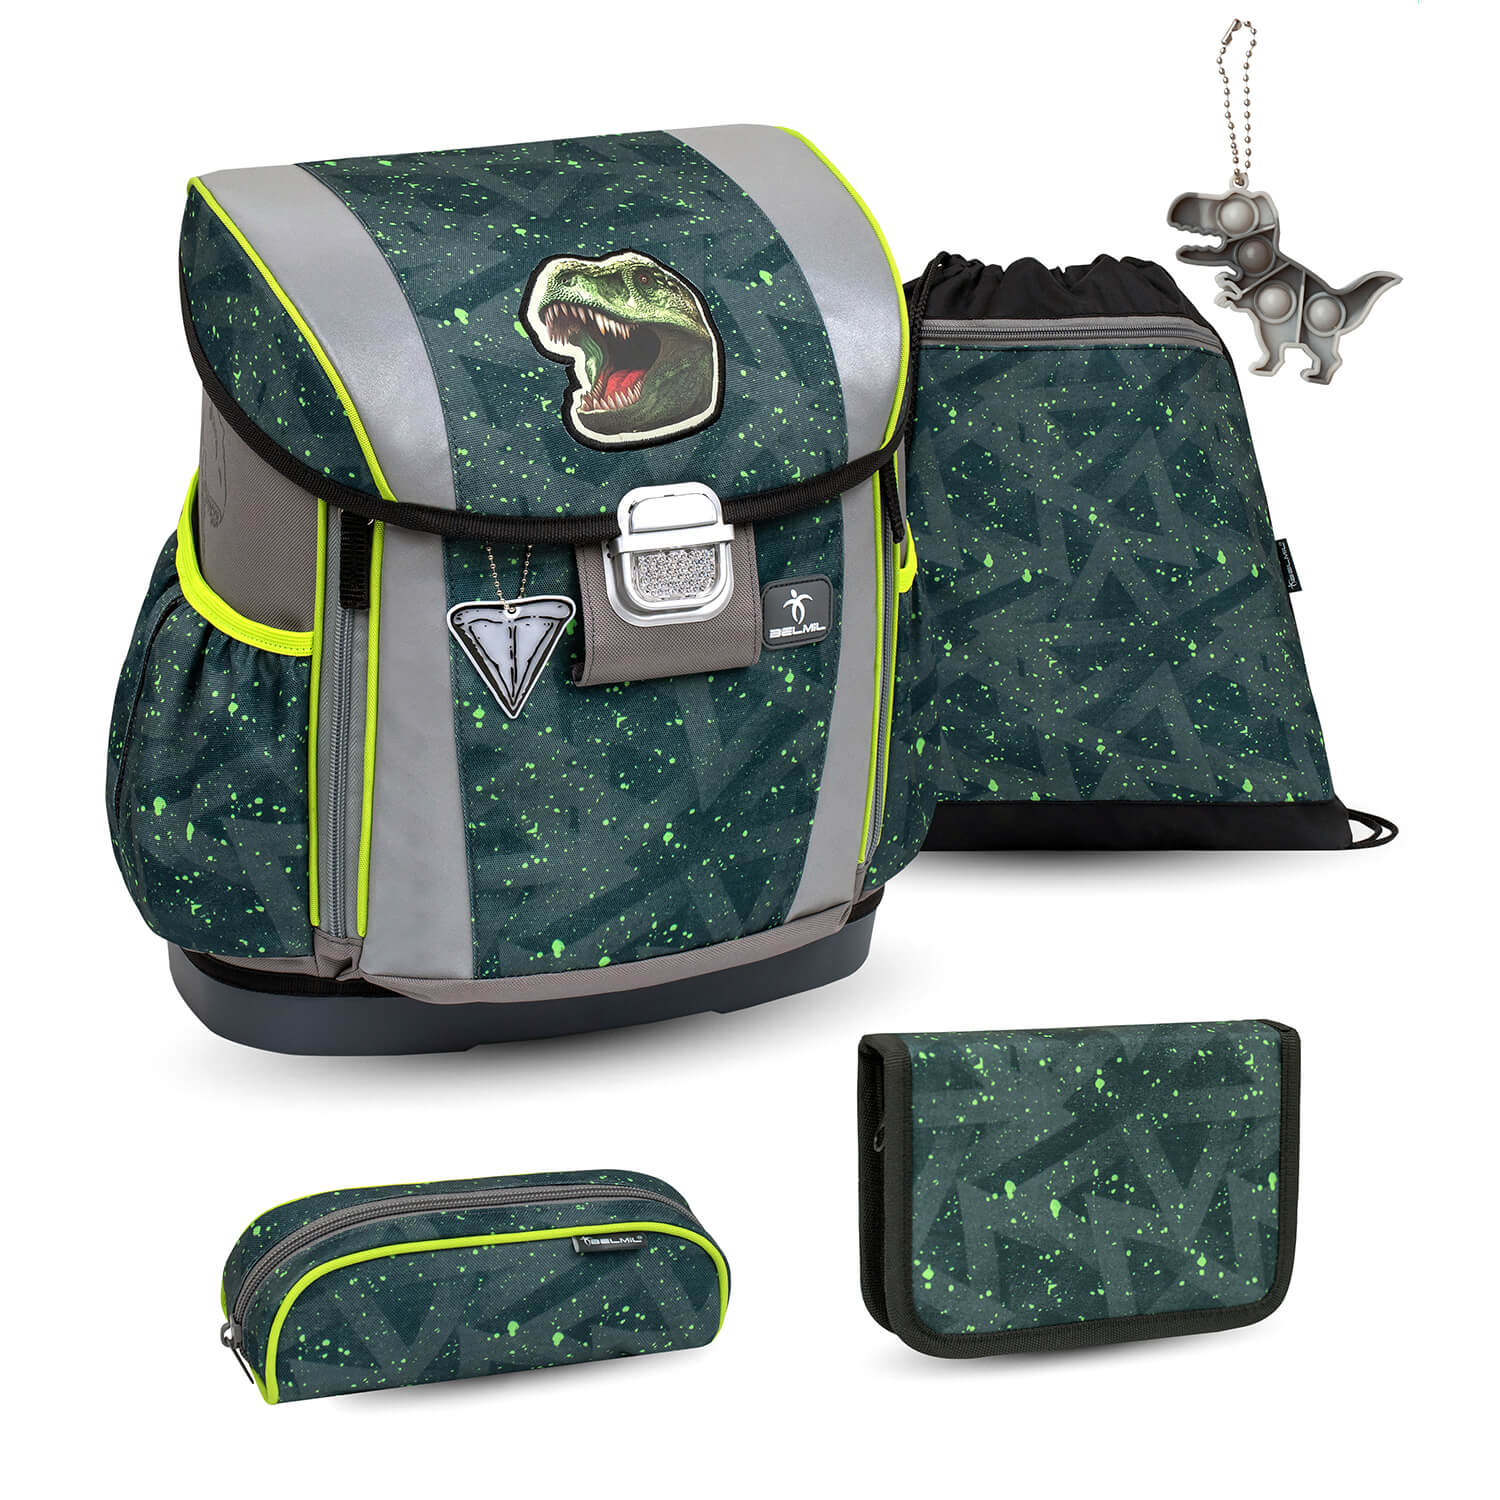 Customize Me T-rex Roar schoolbag set 5 pcs with GRATIS keychain